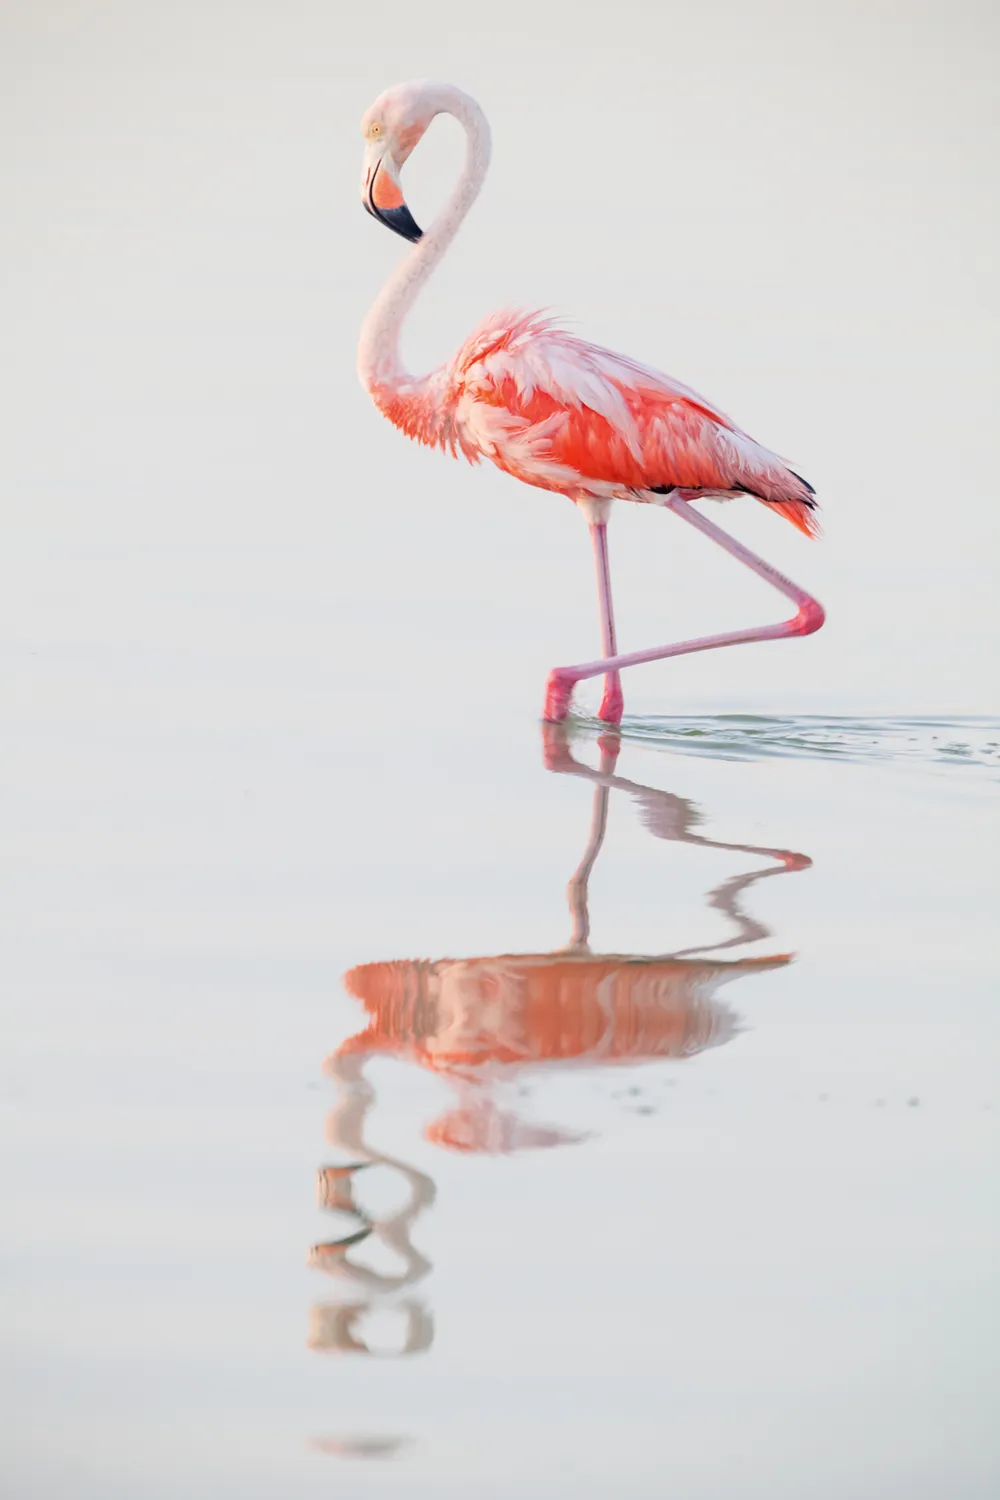 Caribbean flamingo by Claudio Contreras Koob